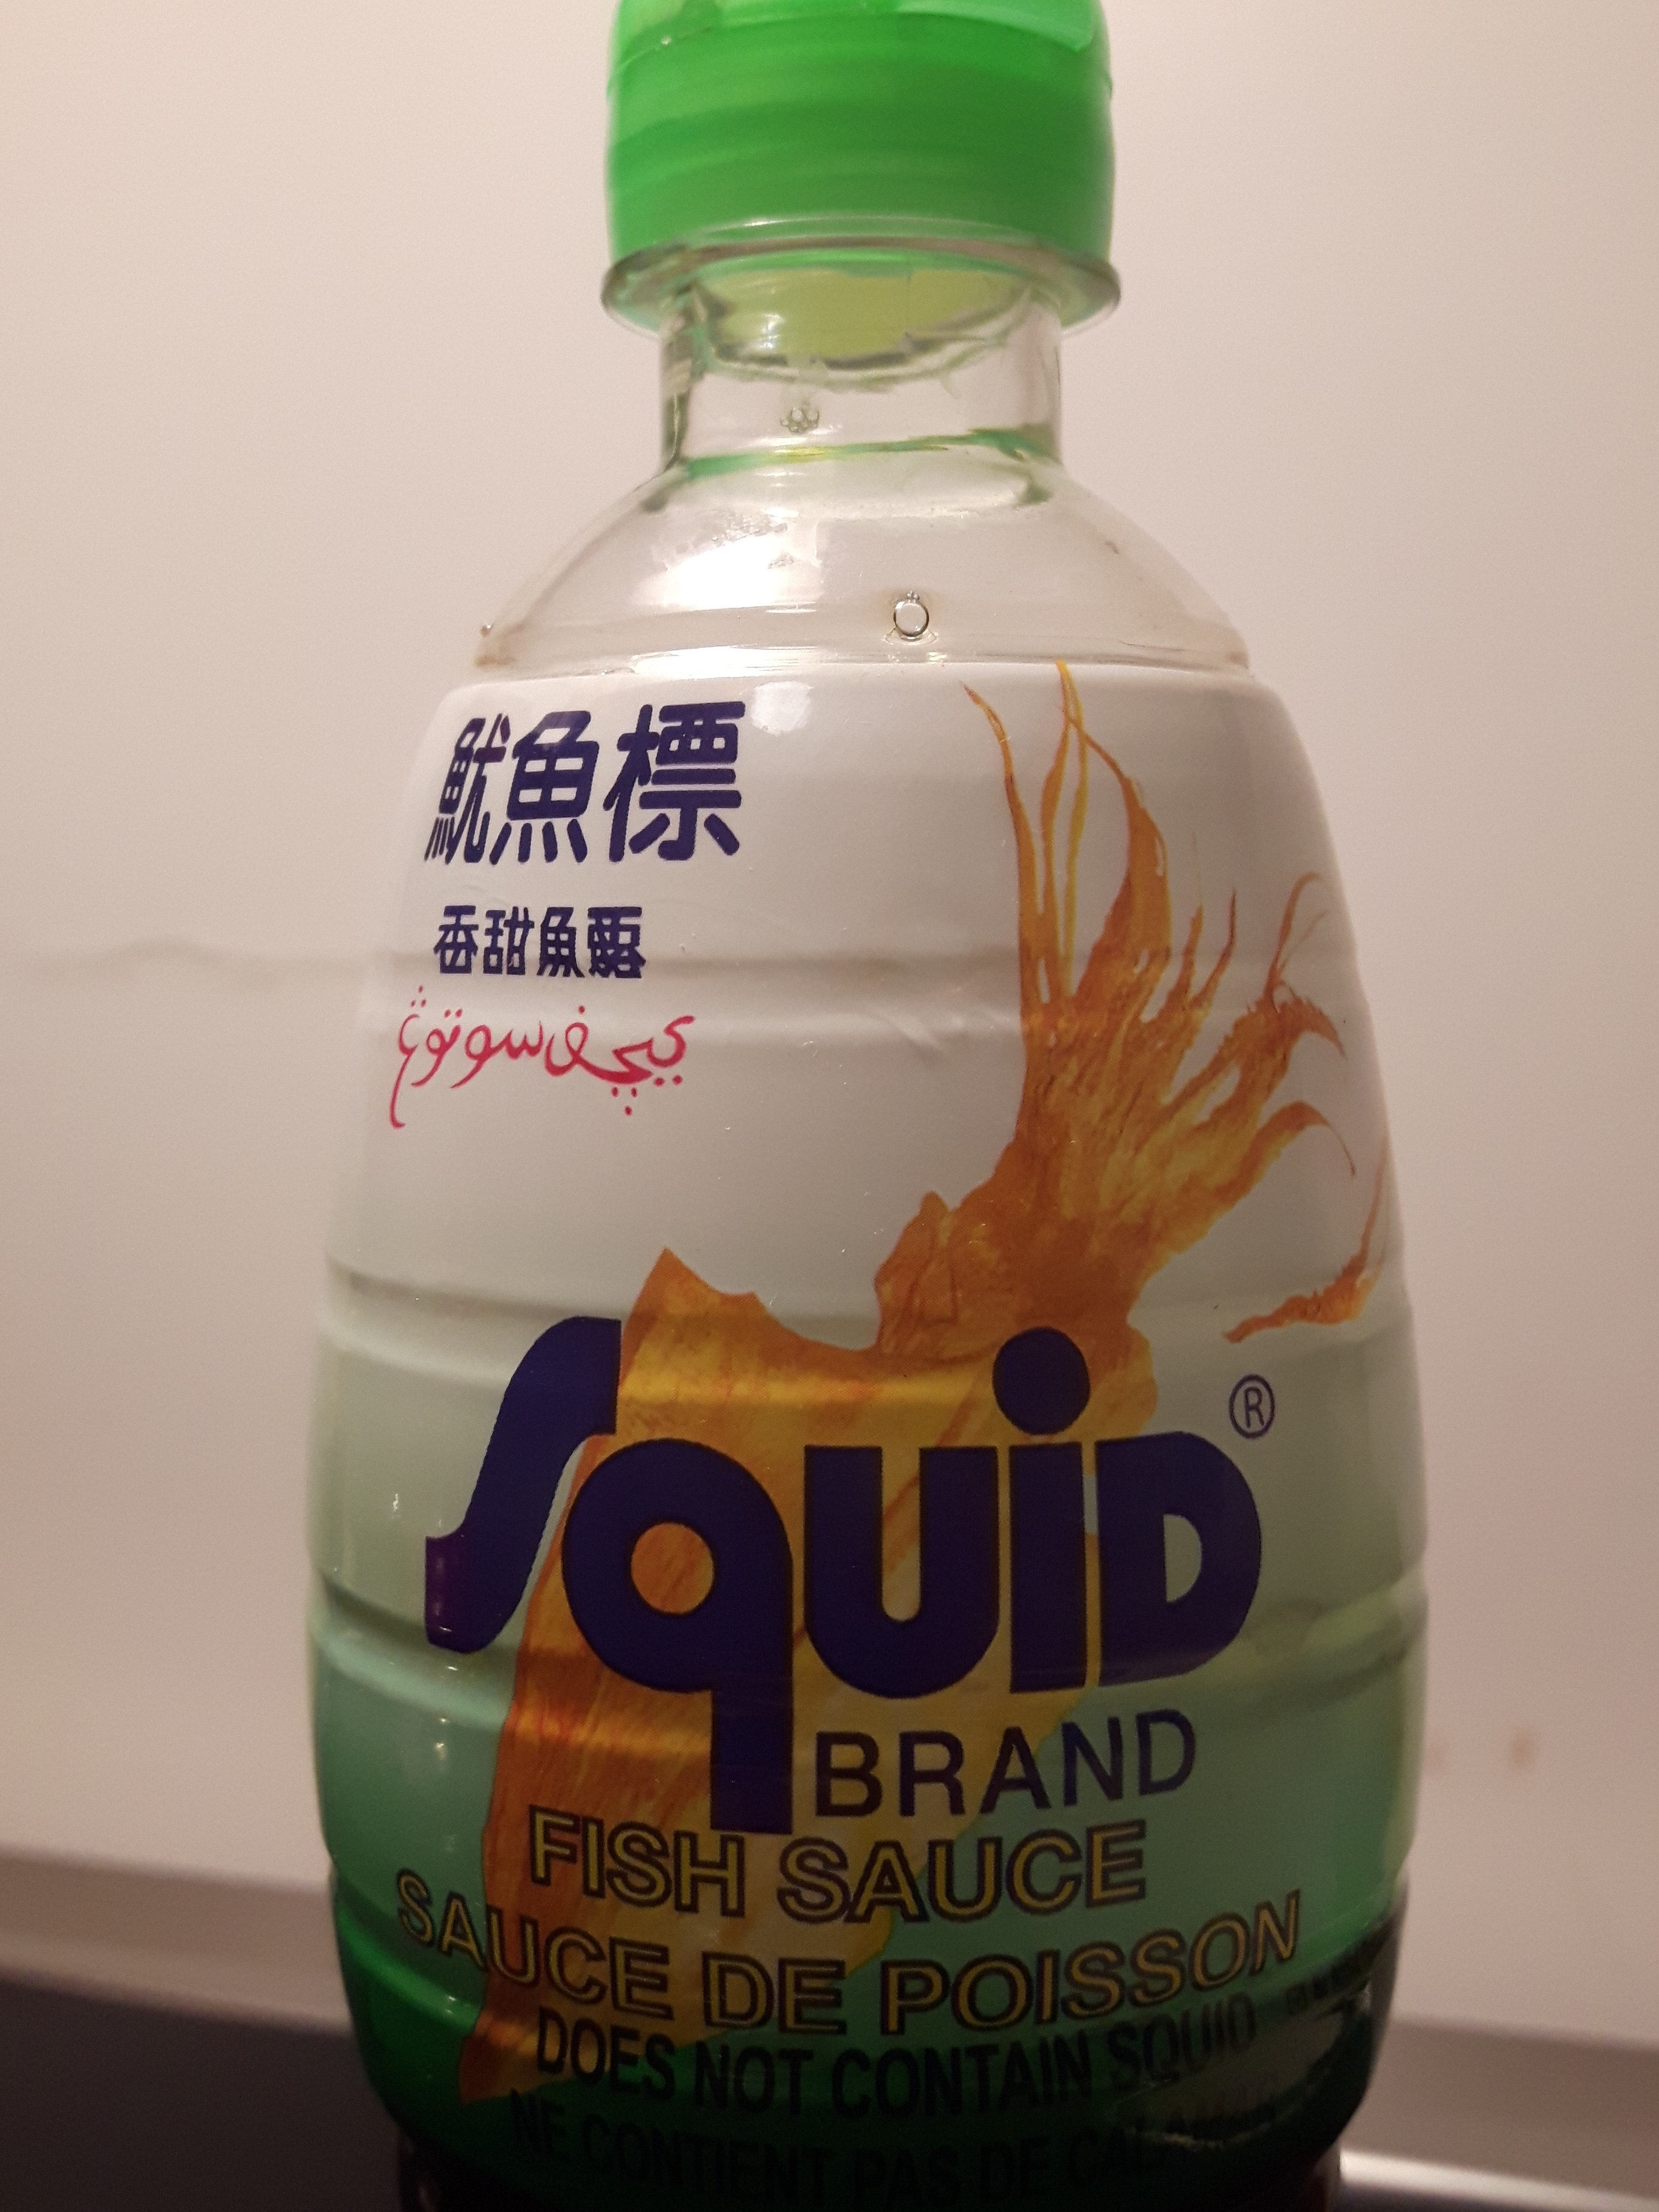 squid brand sauce de poisson - Product - fr